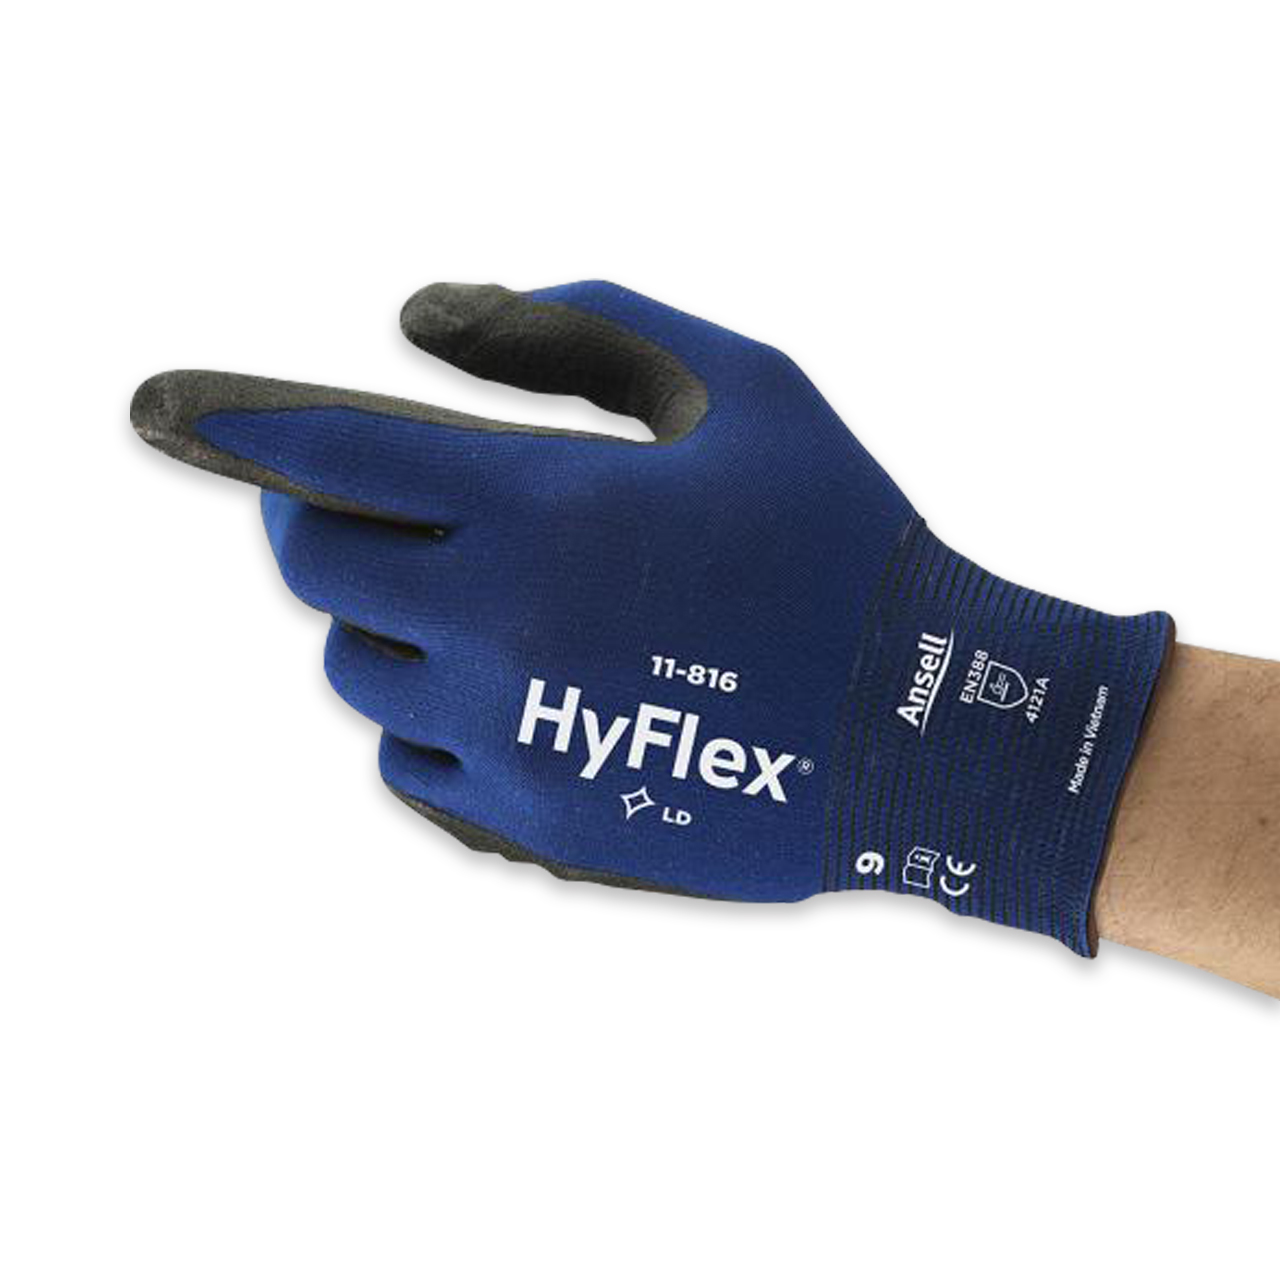 HyFlex® 11-816 Gr. 10/XL